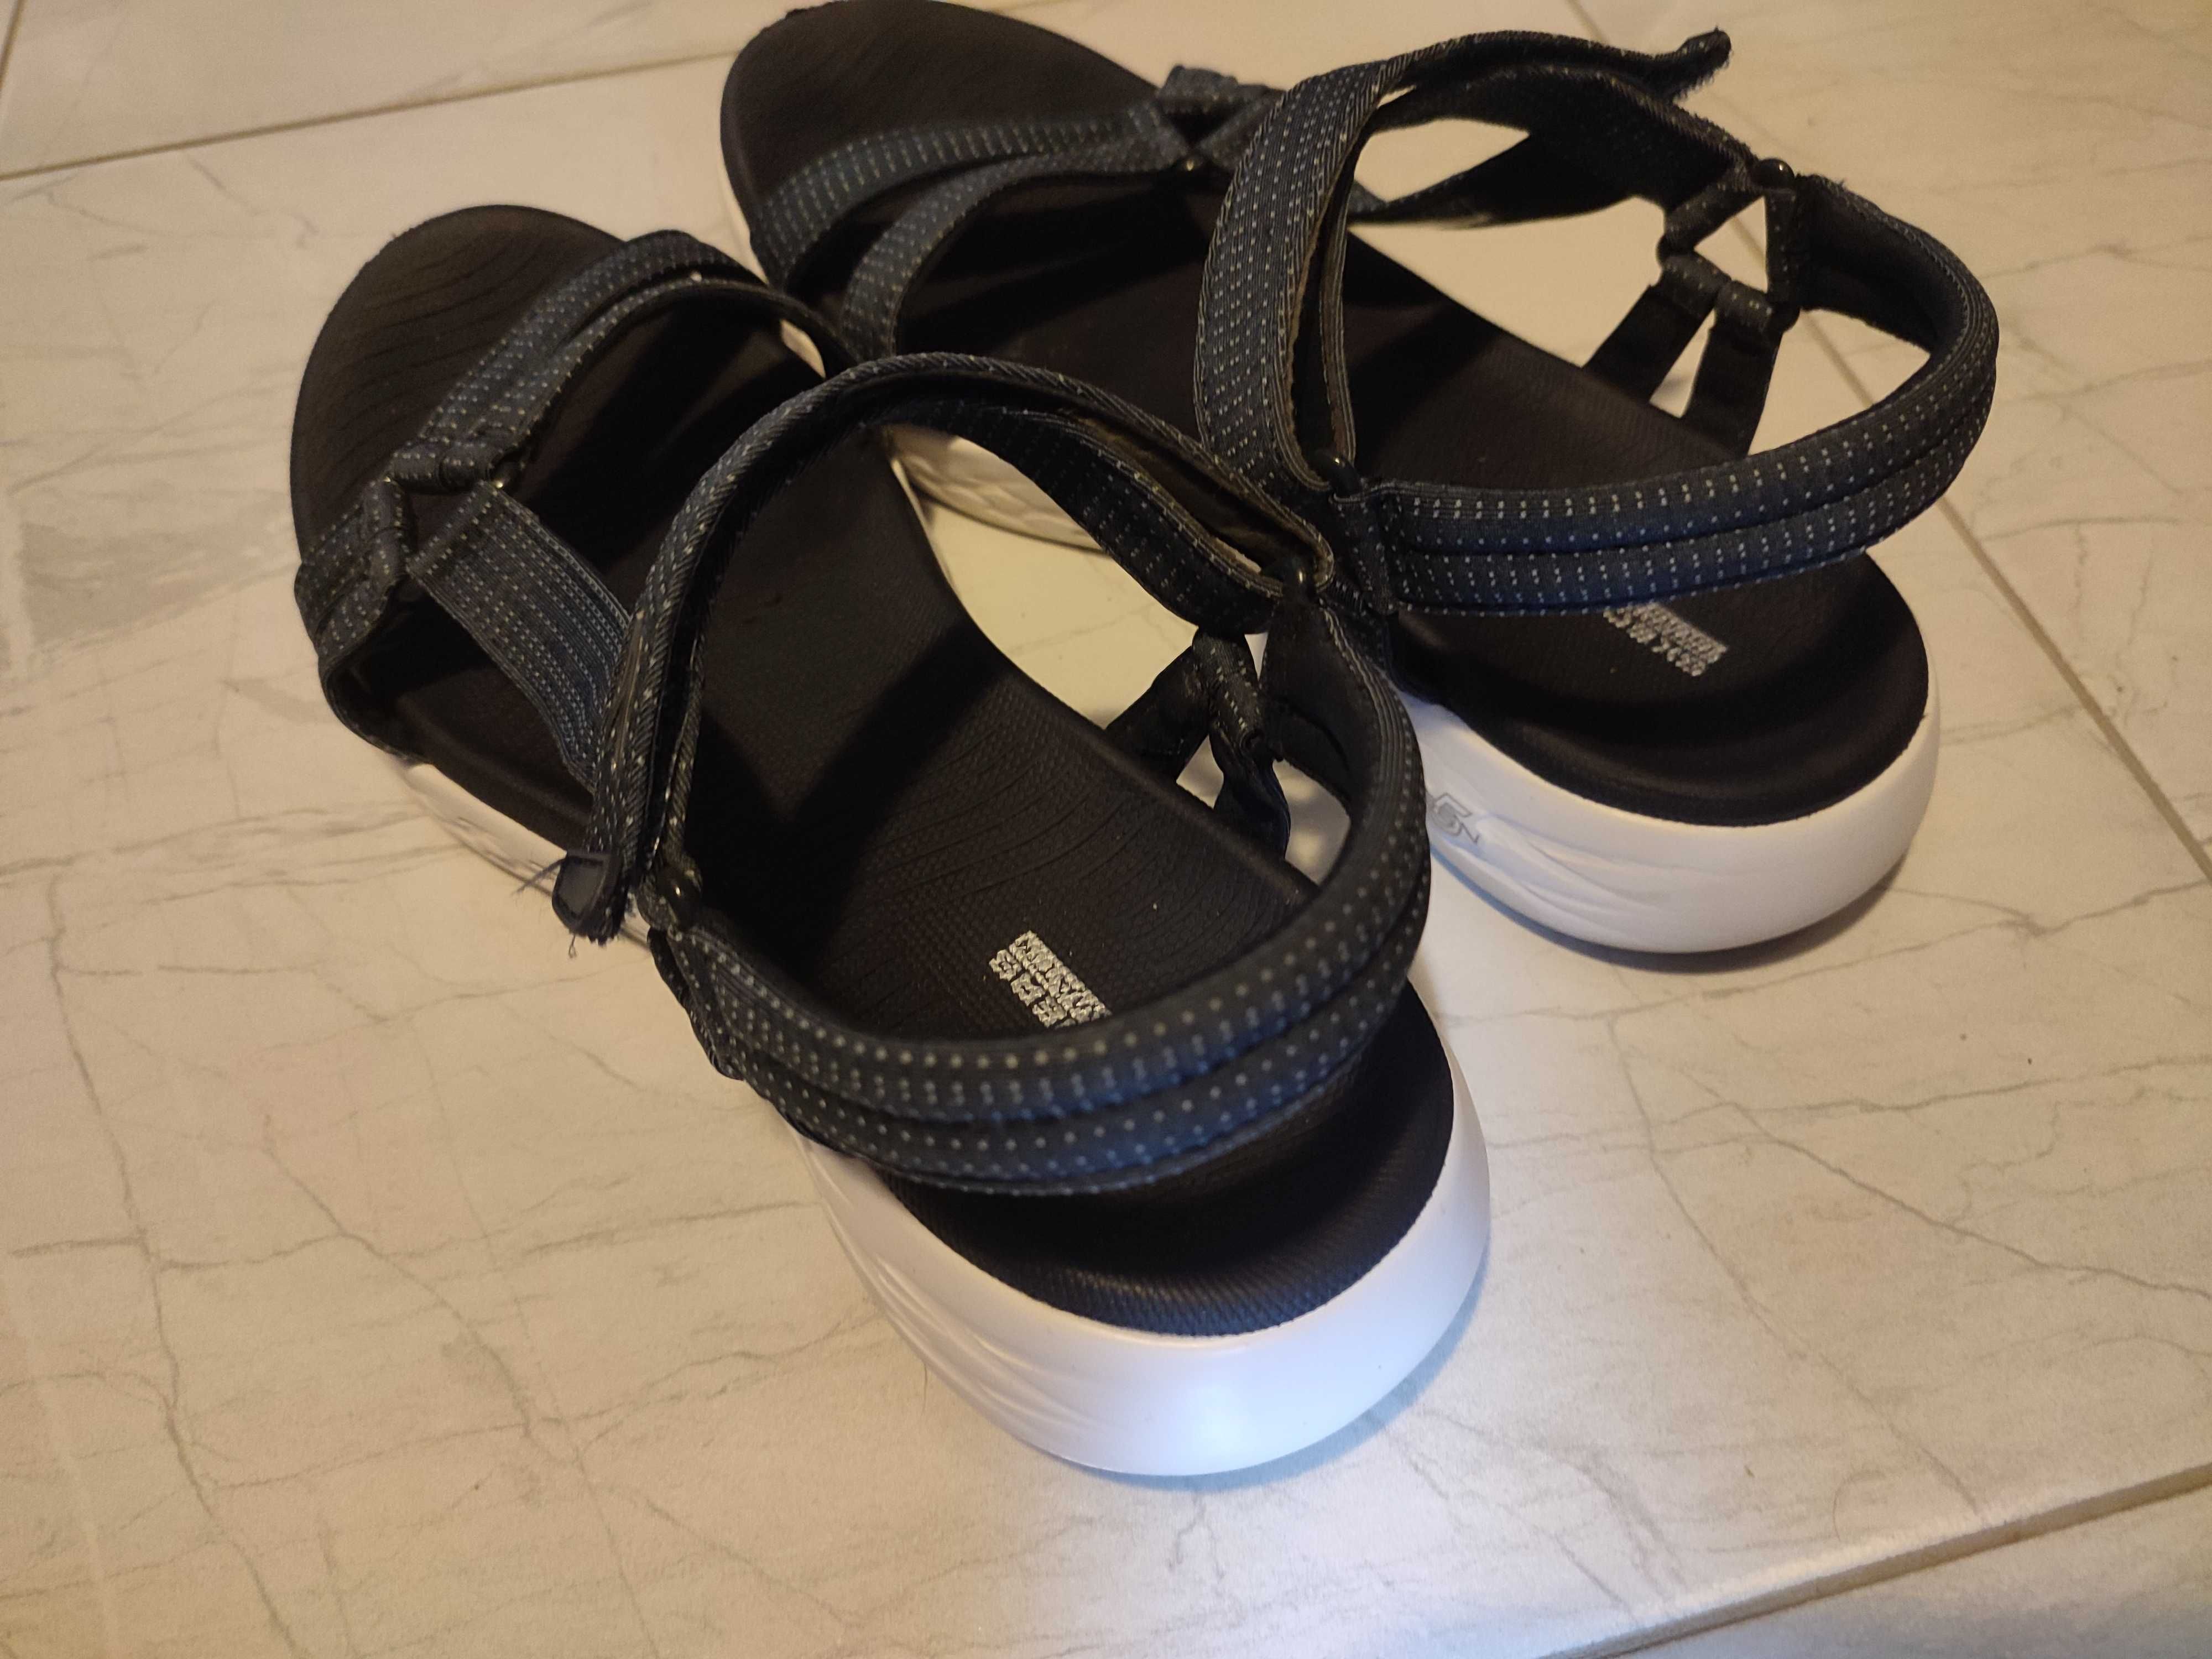 Оригинални сандали Skechers - тъмно сини - носени веднъж